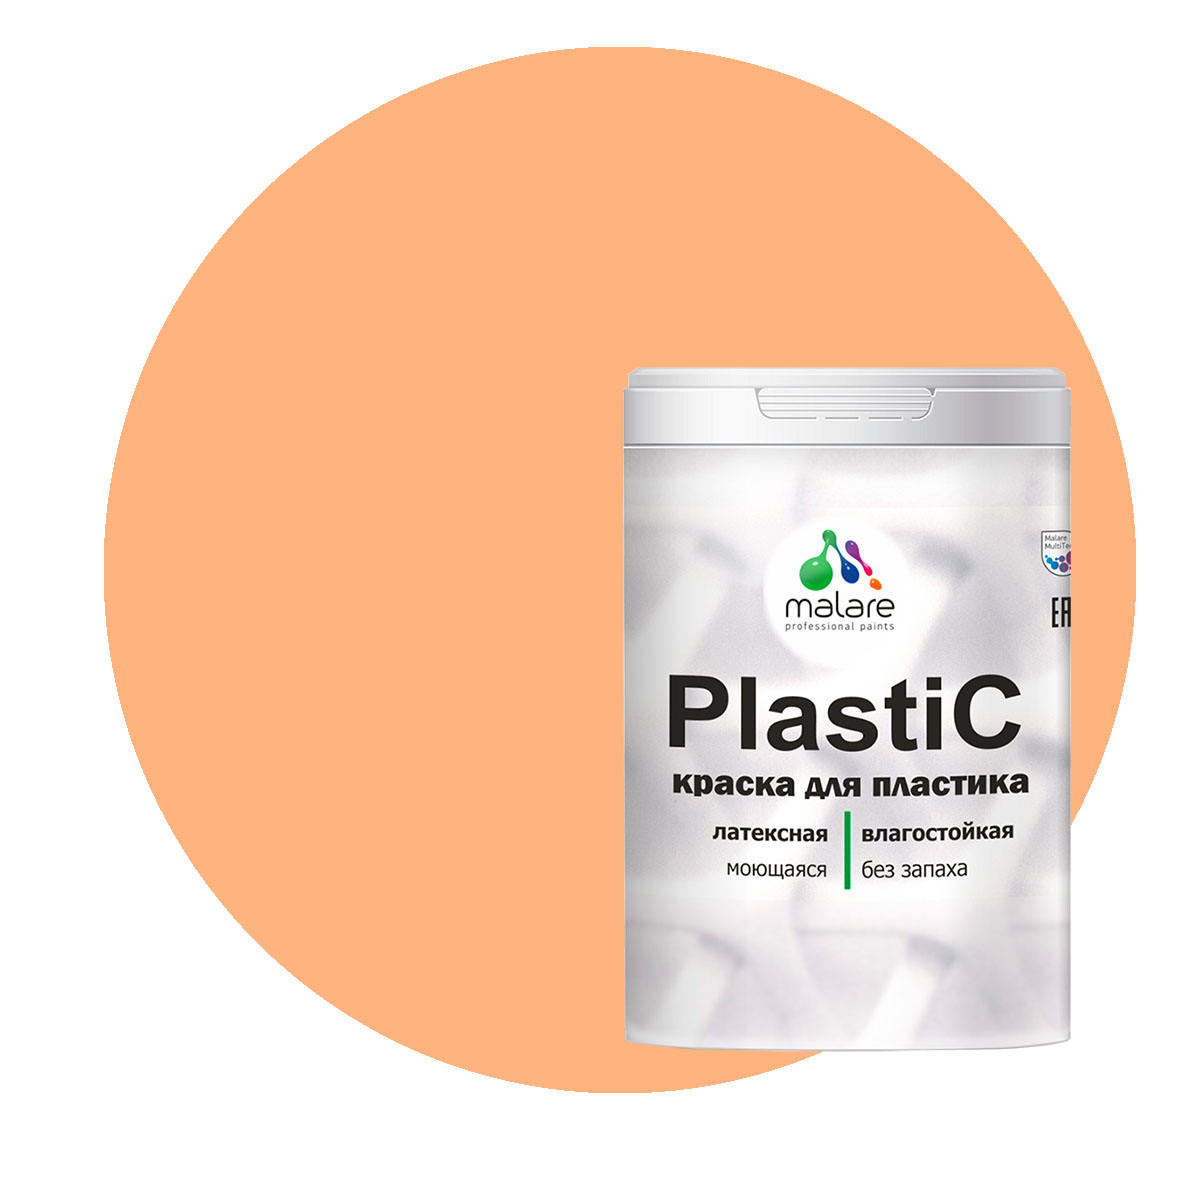 Краска Malare PlastiC для пластика, ПВХ, для сайдинга, свежая охра, 2 кг. краска malare plastic для пластика пвх для сайдинга вечерний марсель 2 кг